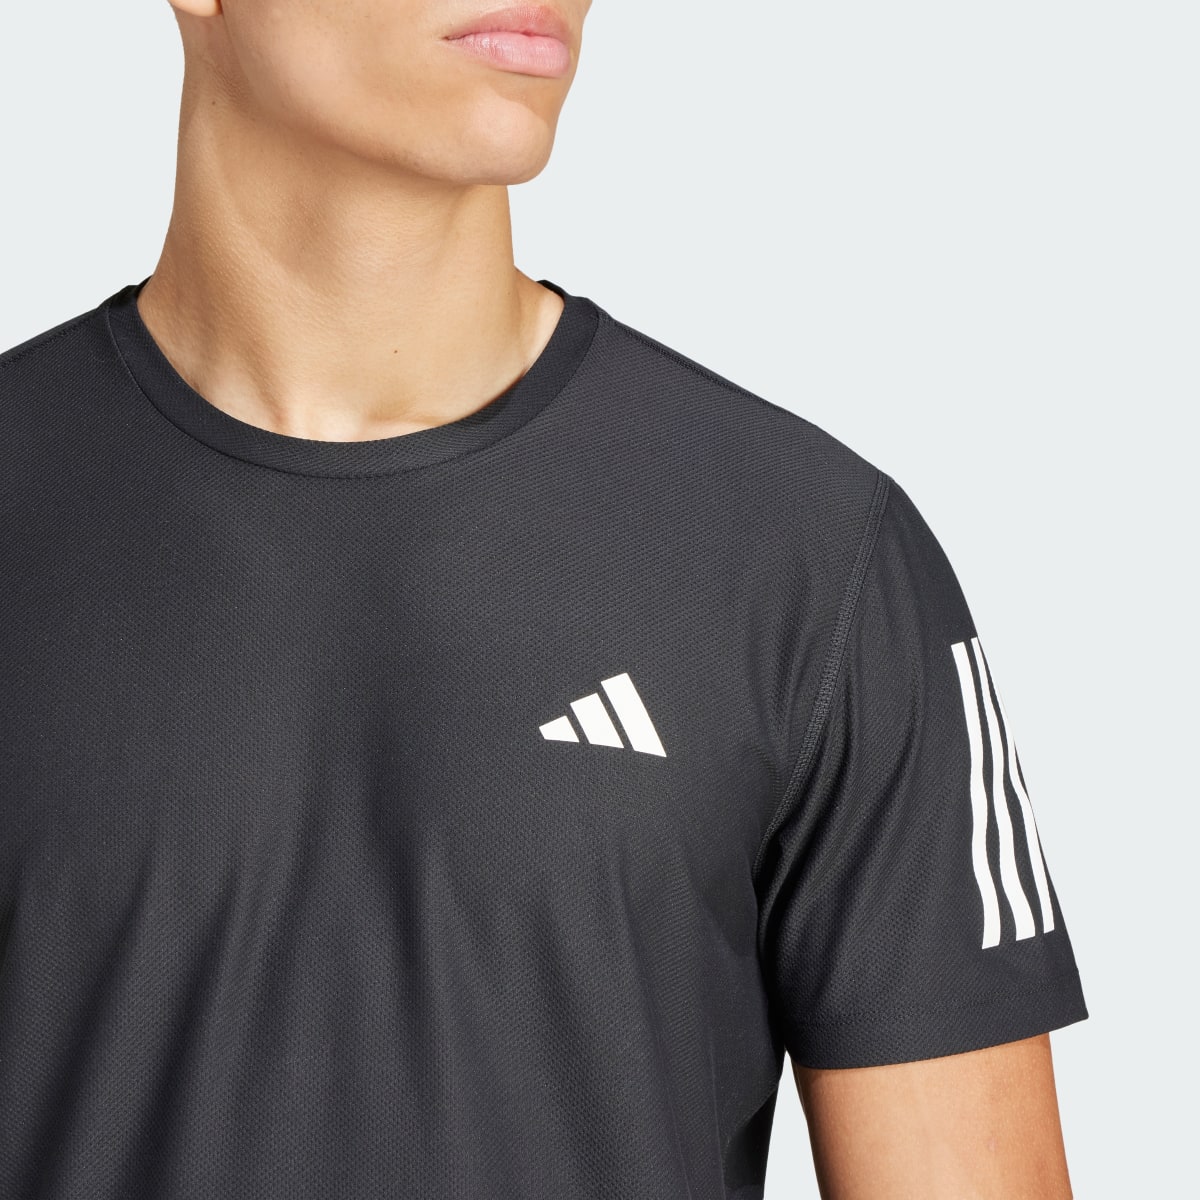 Adidas Camiseta Own the Run. 6